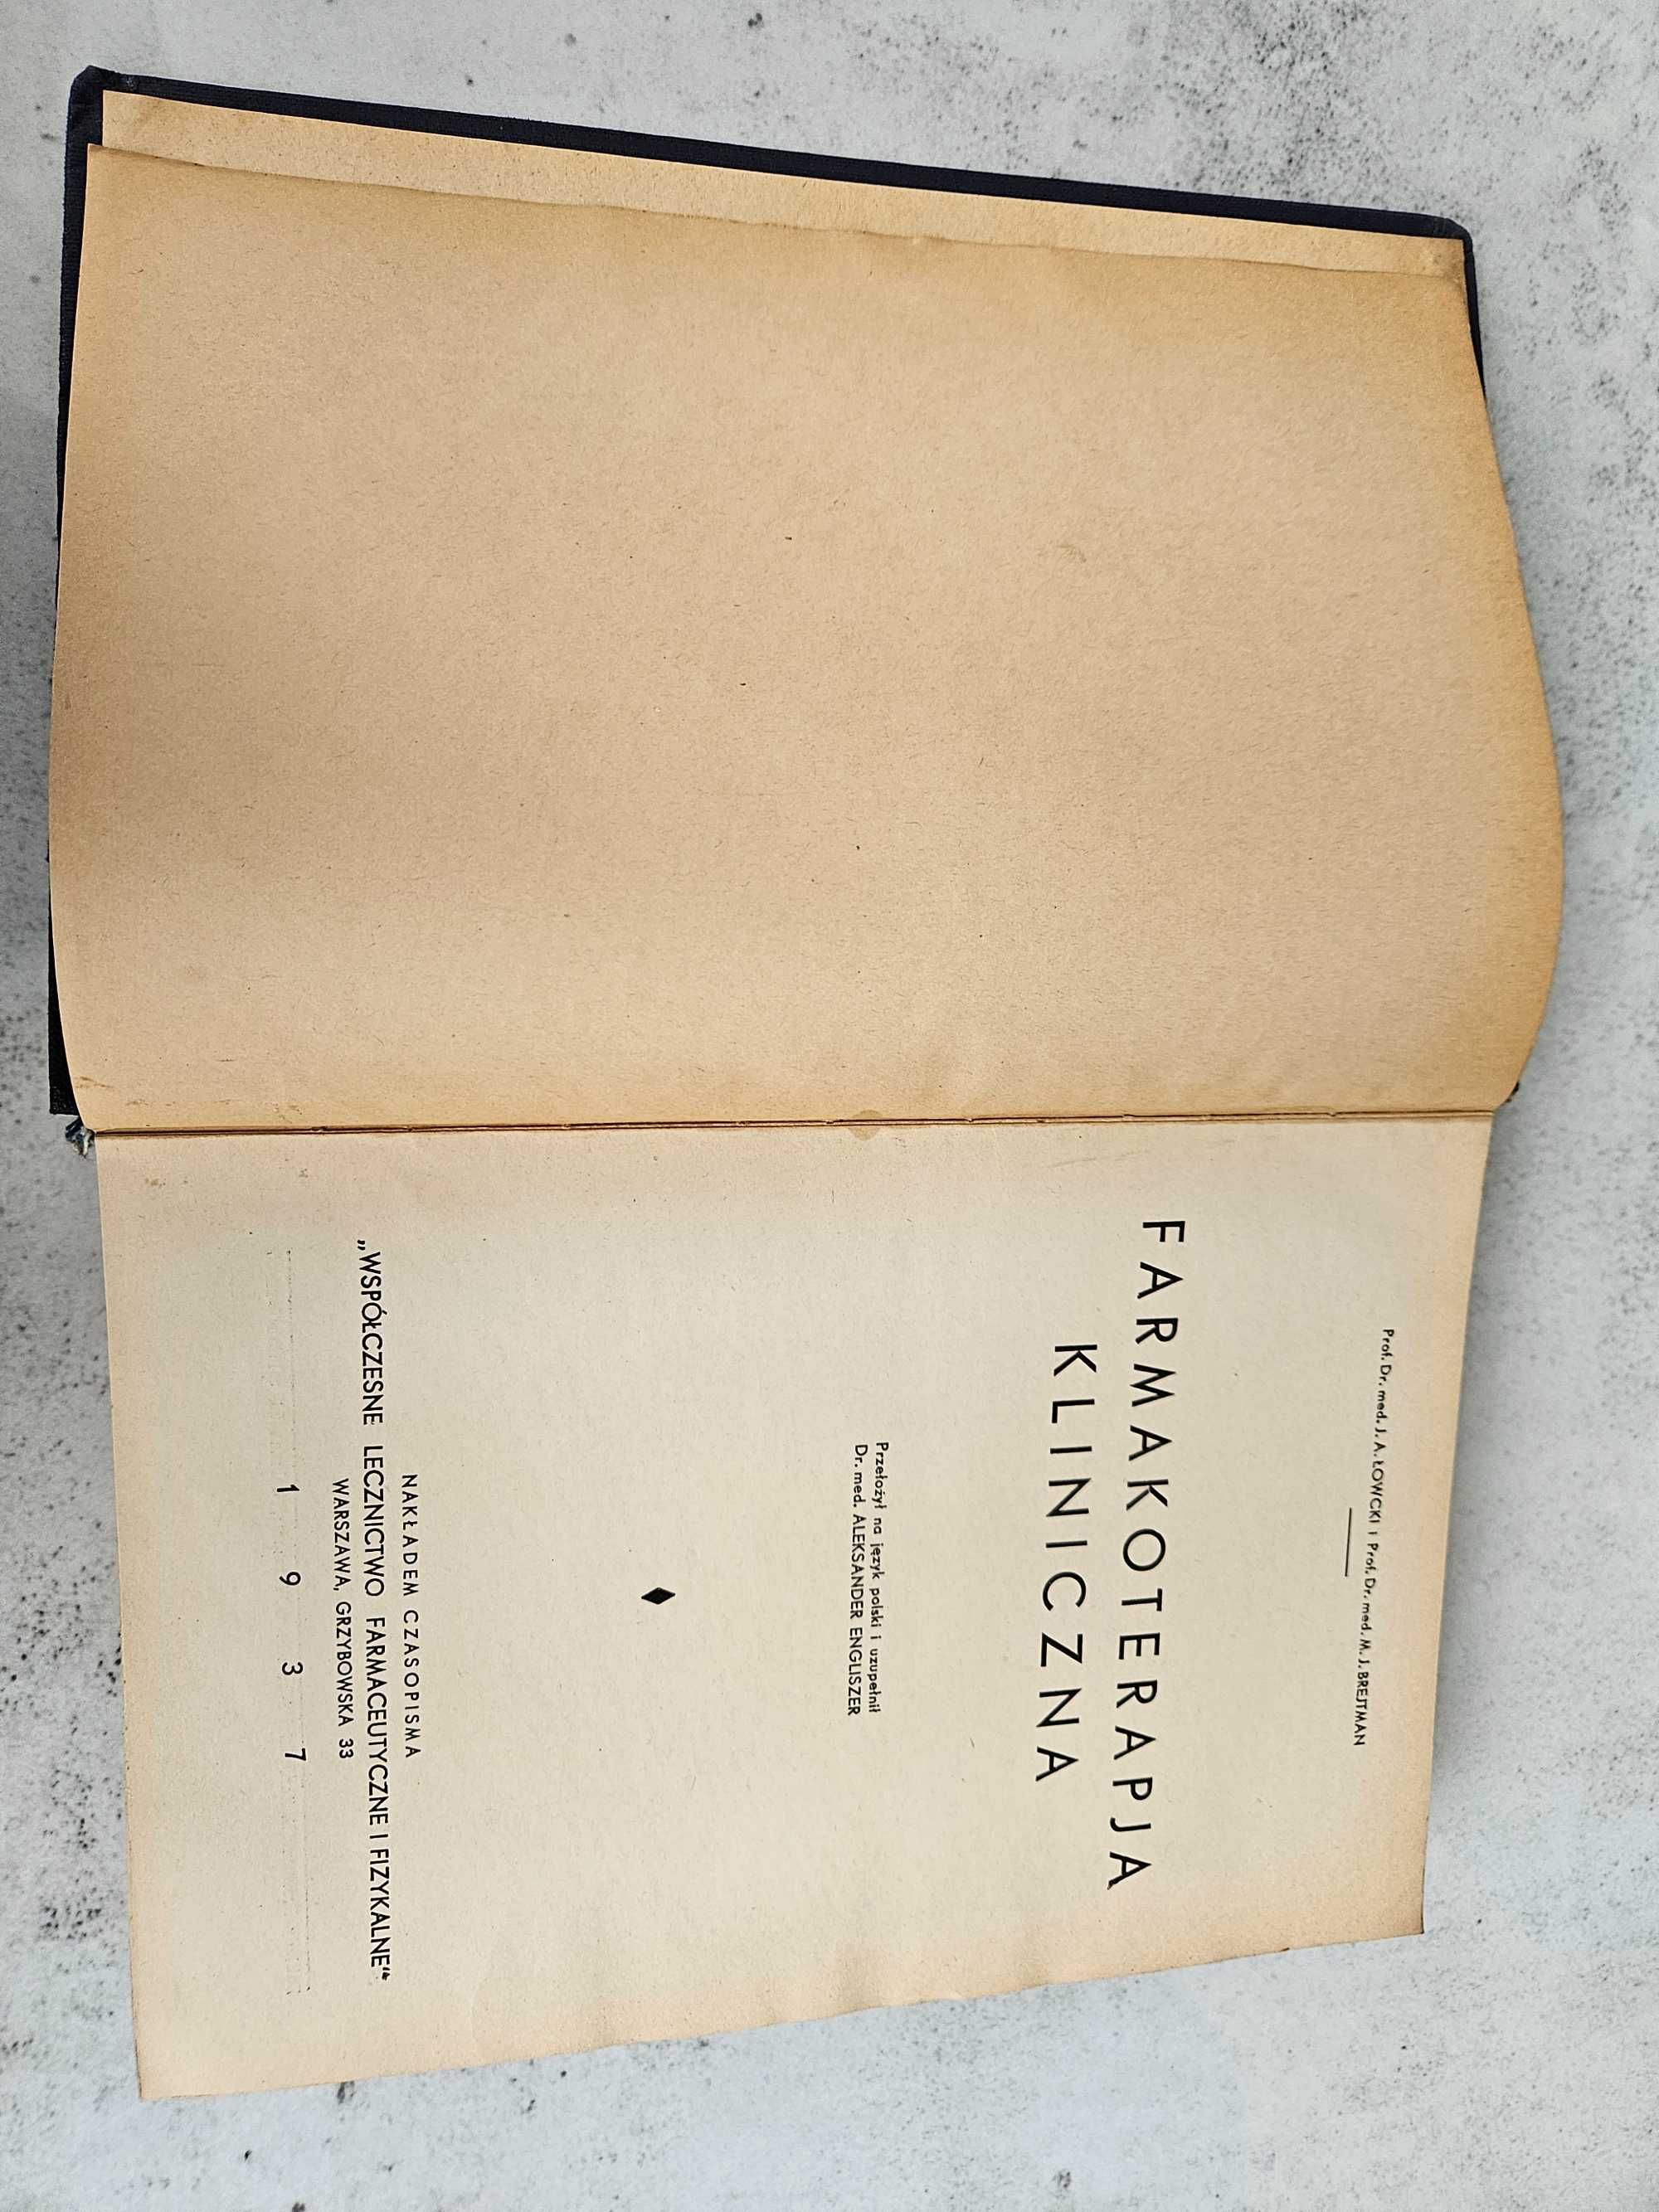 Medyczna ksiażka przedwojenna z 1937r " FARMAKOTERAPIA KLINICZNA"